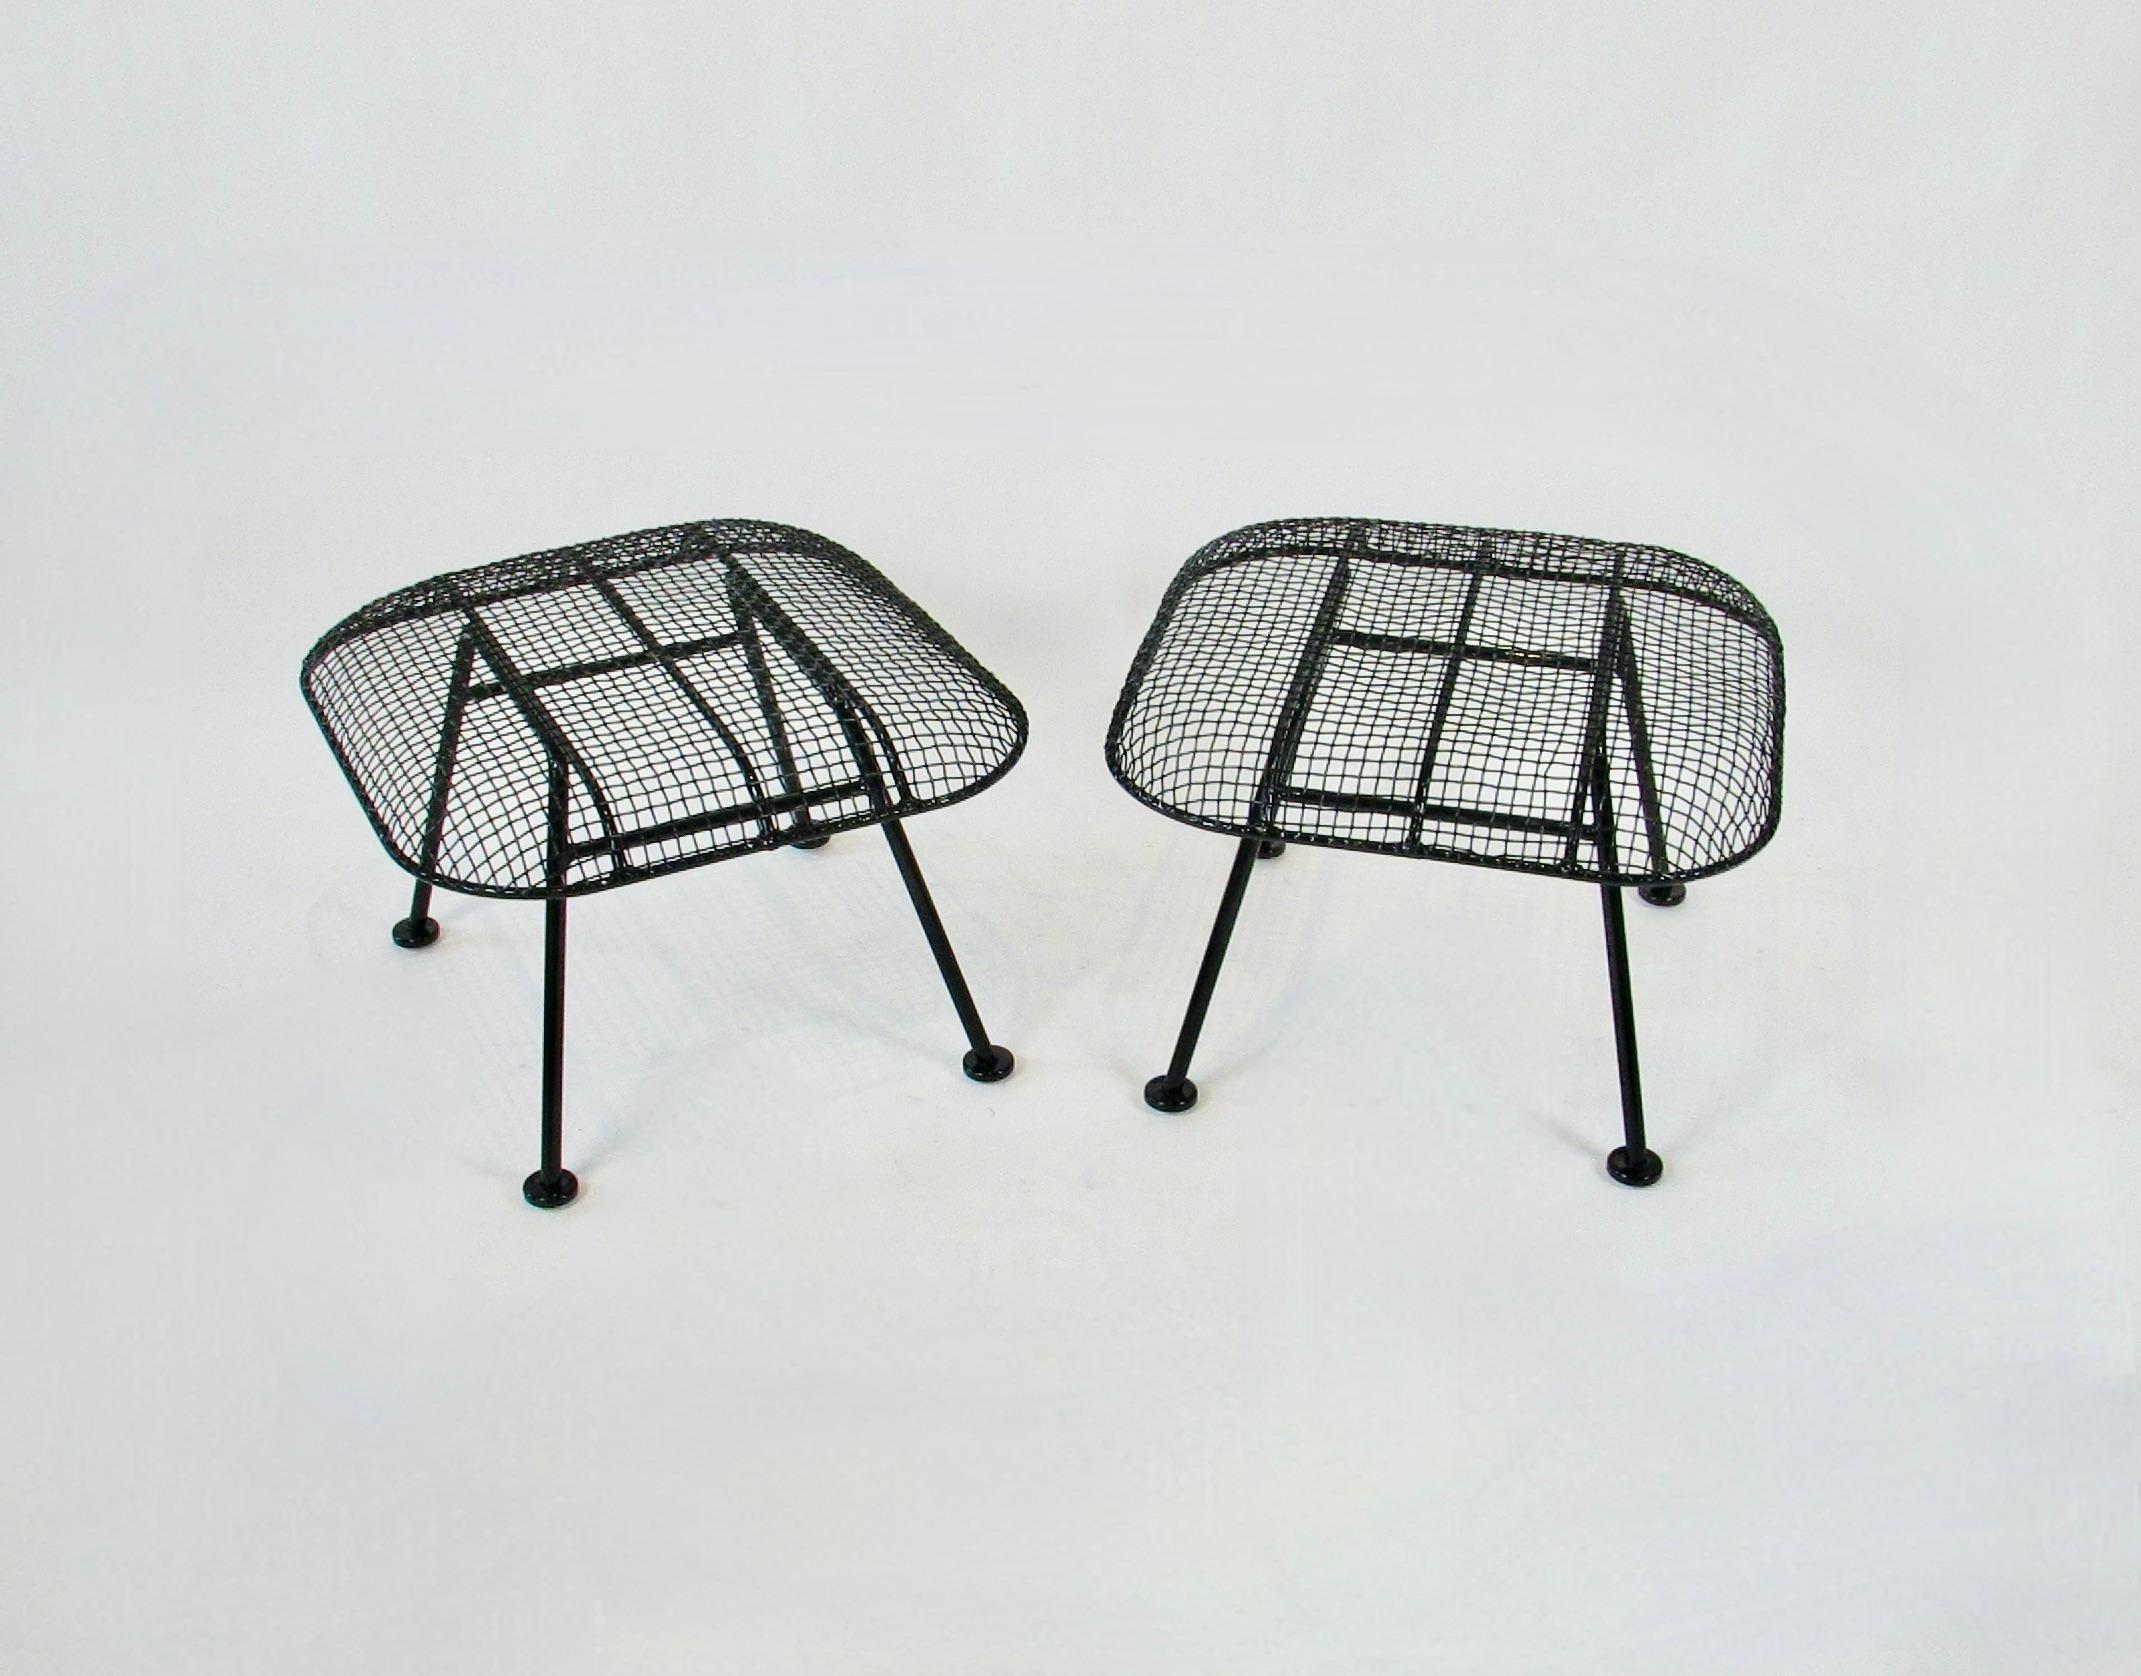 Ein Paar Woodard Ottomane aus Stahlgeflecht über Schmiedeeisen. Teil der Woodard-Skulpturenserie. Entworfen, um mit den großen Woodard Lounge Chairs als Hocker oder Beistelltisch zu arbeiten. Wunderschön restauriert in glänzend schwarzer